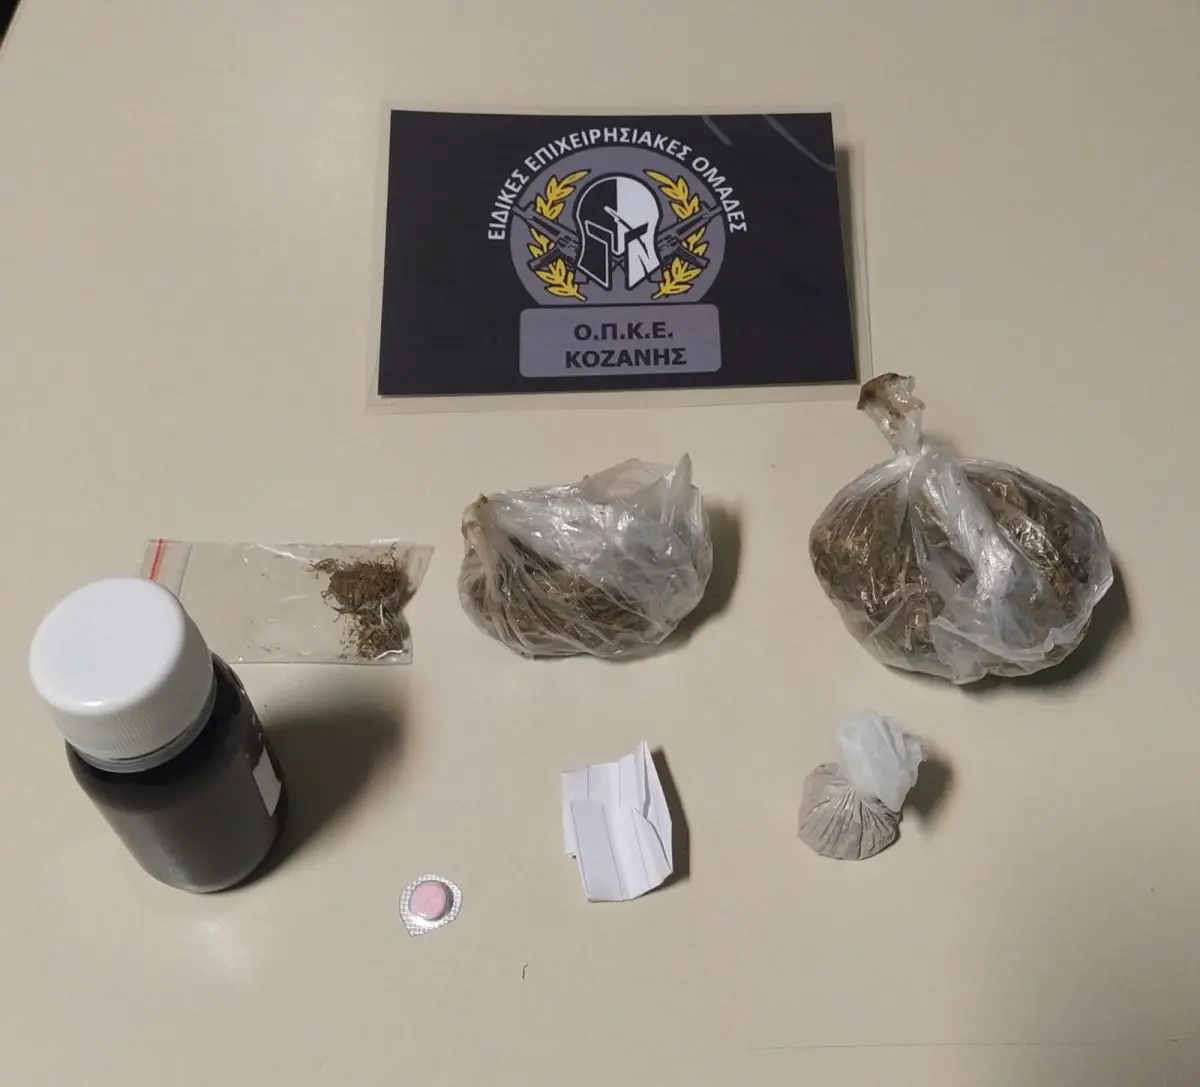 Συνελήφθησαν δύο άτομα σε περιοχή της Κοζάνης για κατοχή ναρκωτικών ουσιών